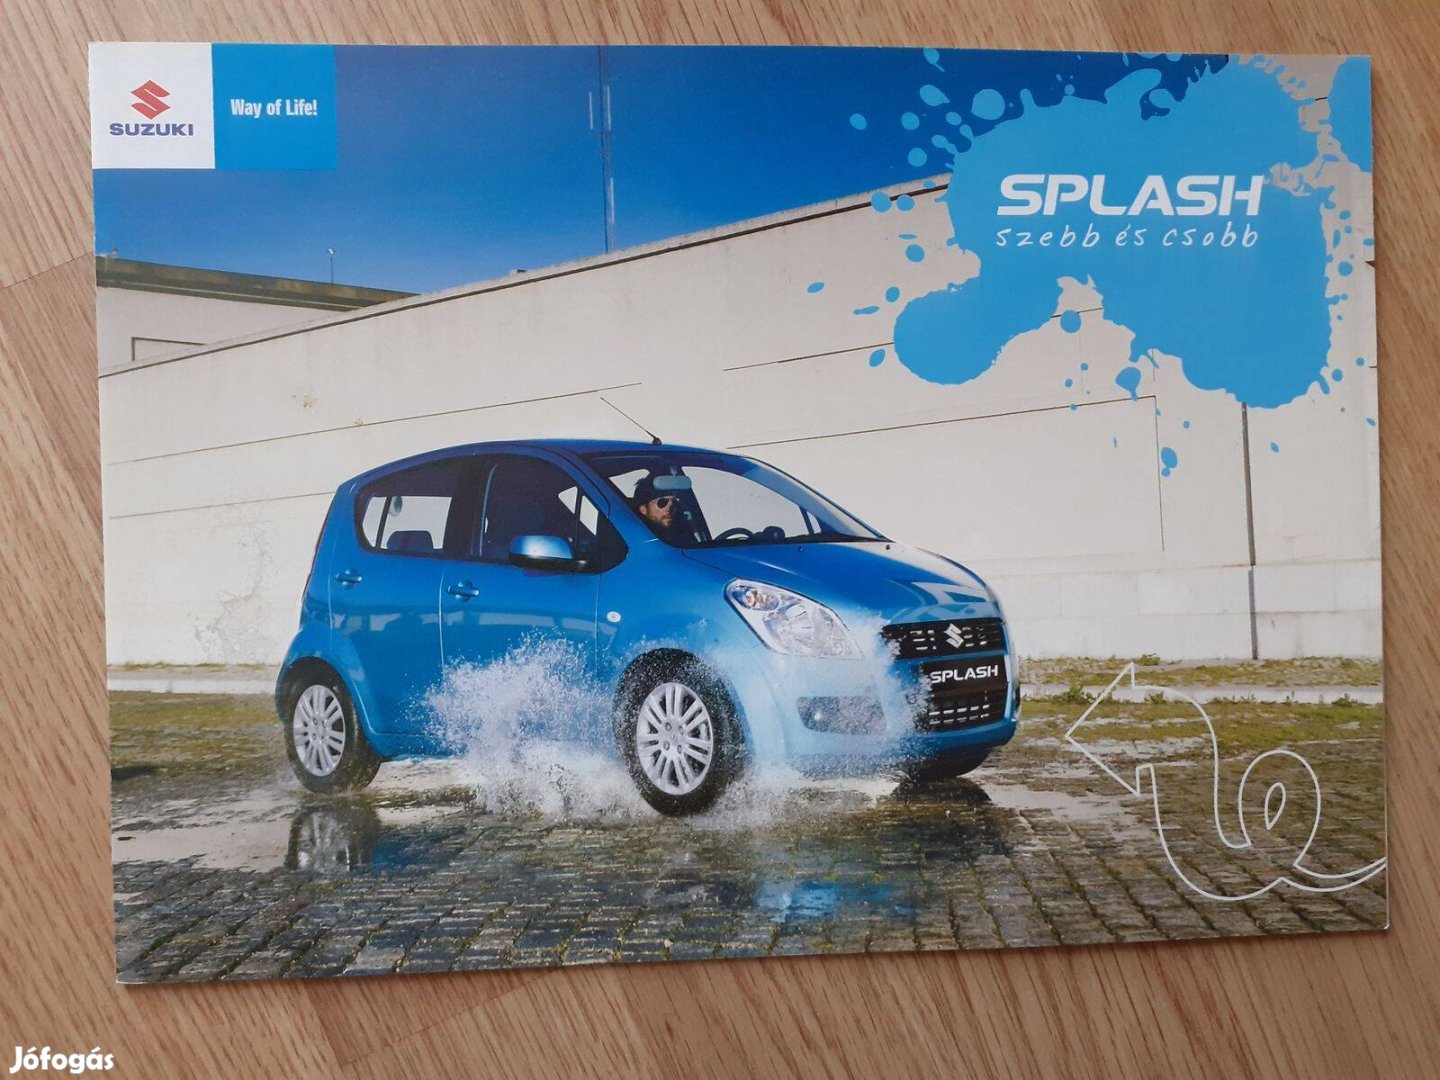 Suzuki Splash prospektus - magyar nyelvű